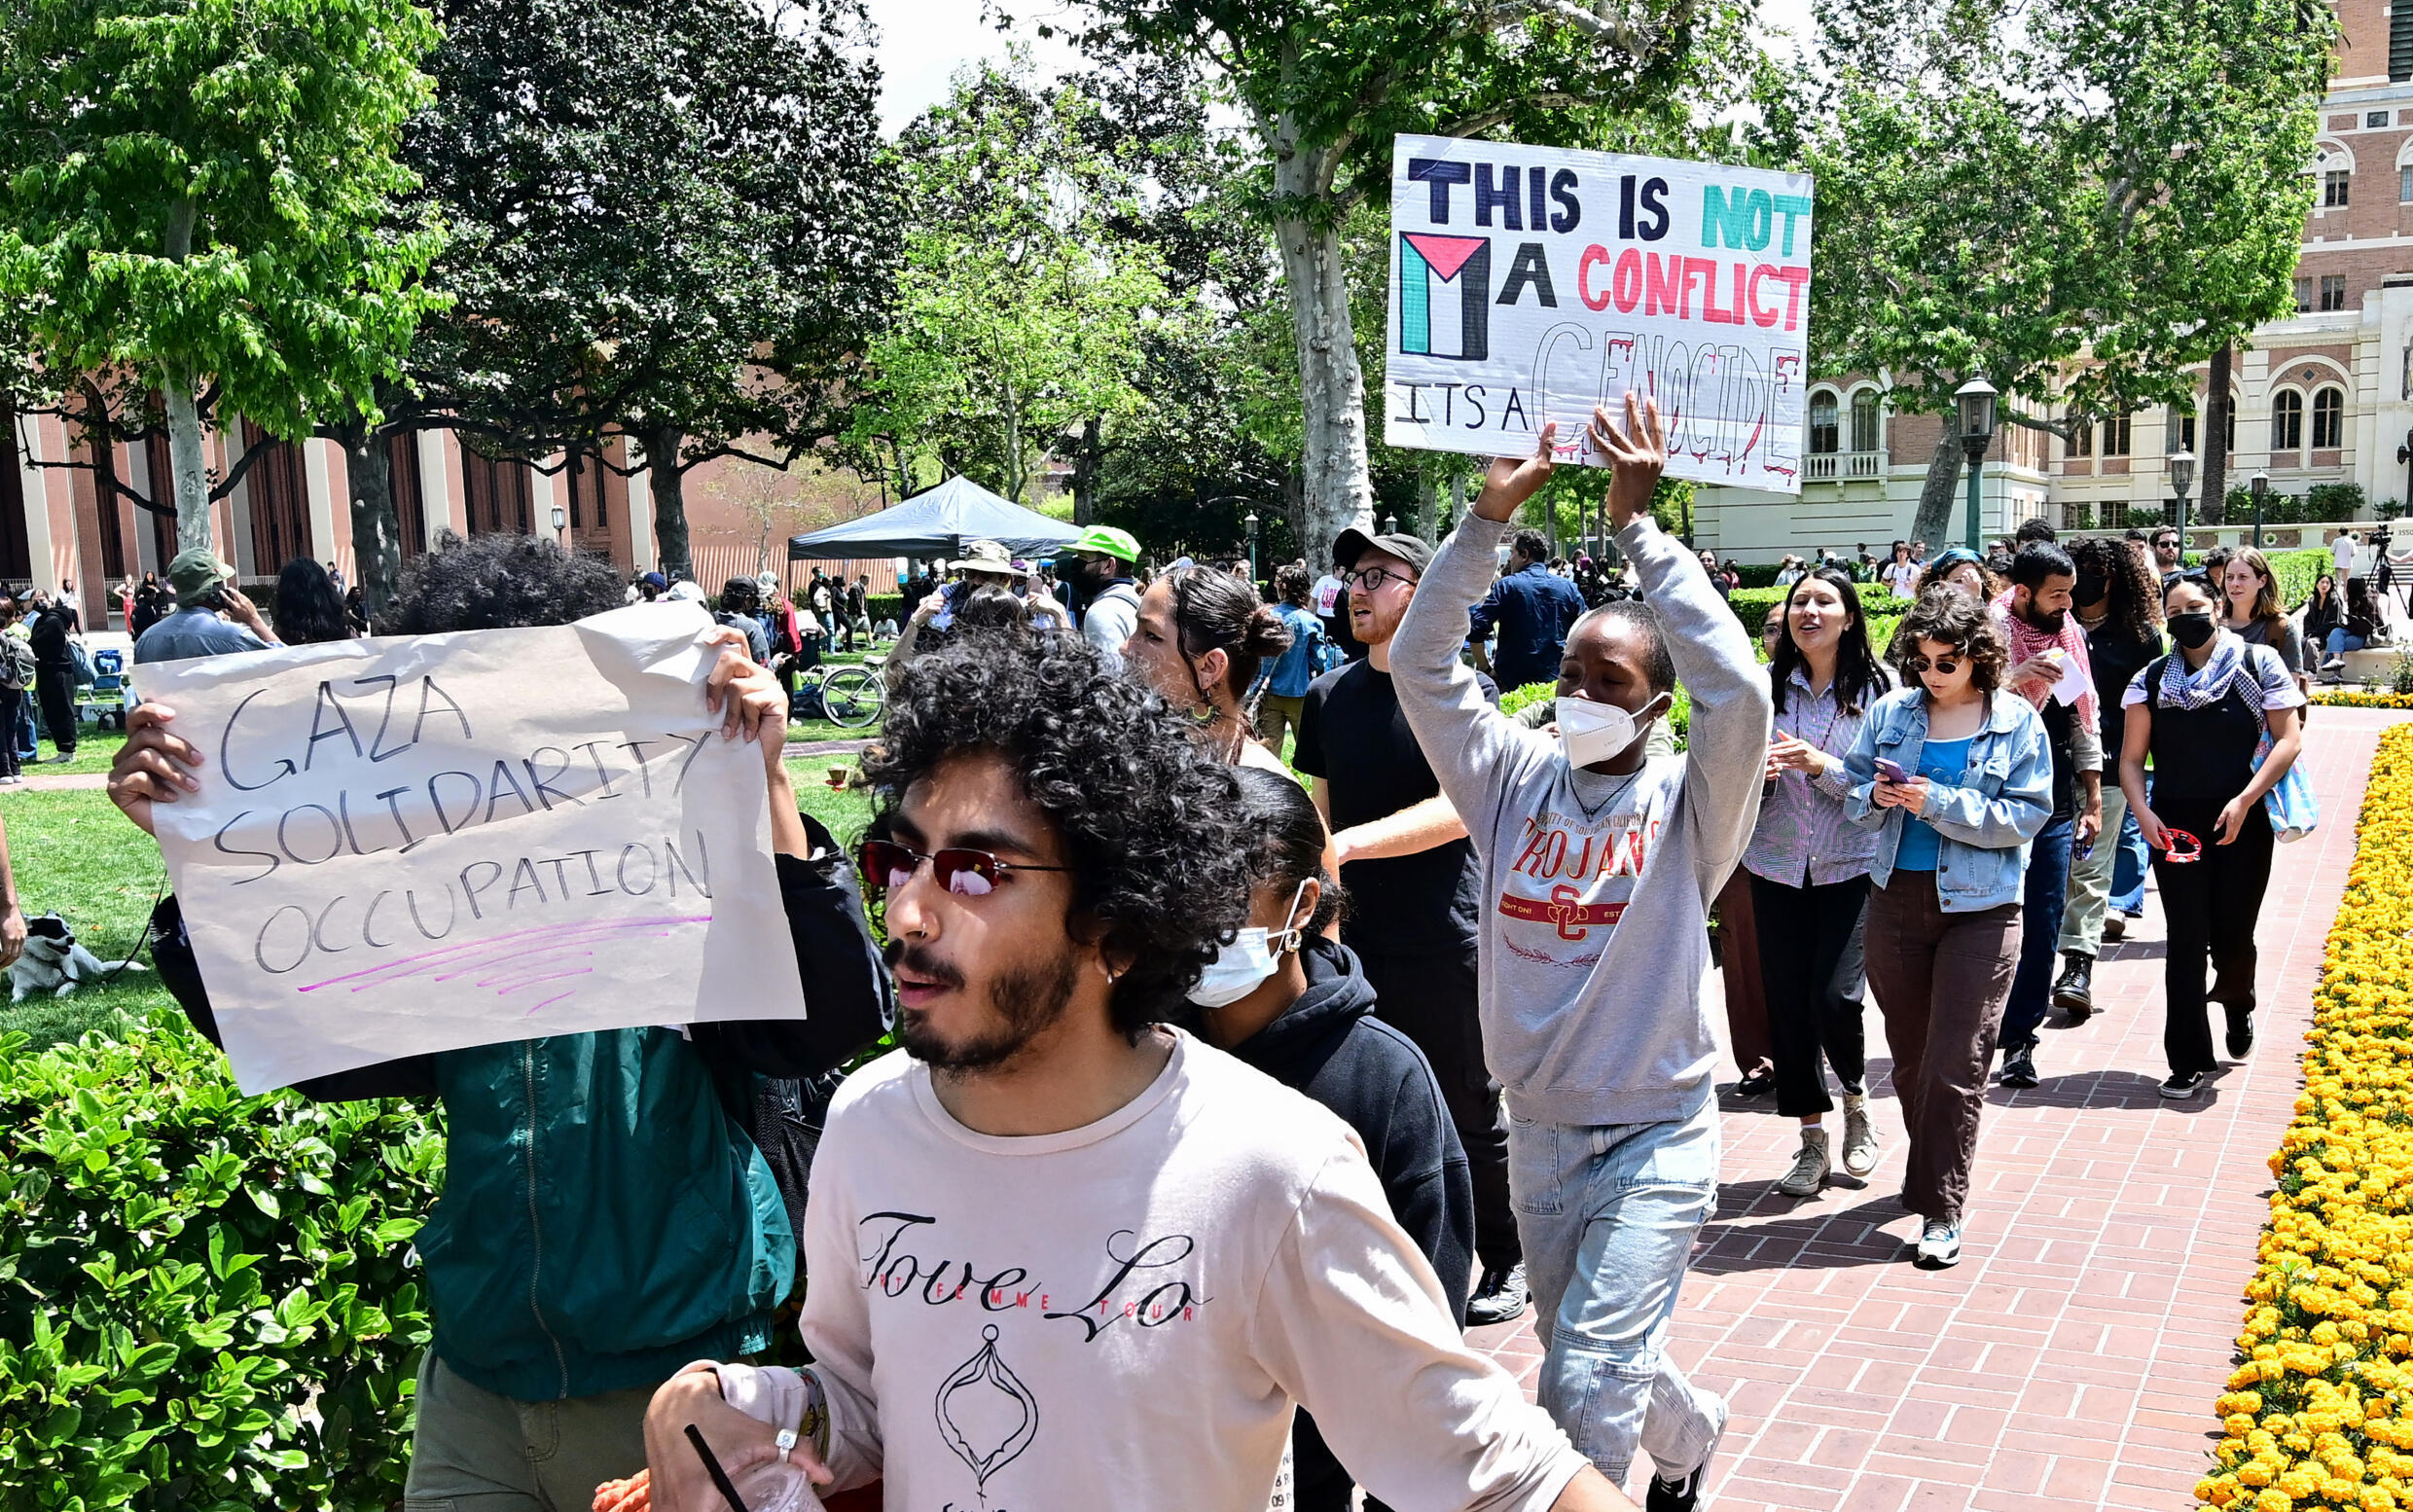 93 Personen wurden auf dem Campus der University of Southern California in Los Angeles festgenommen, nachdem an US-Universitäten pro-palästinensische Proteste ausgebrochen waren